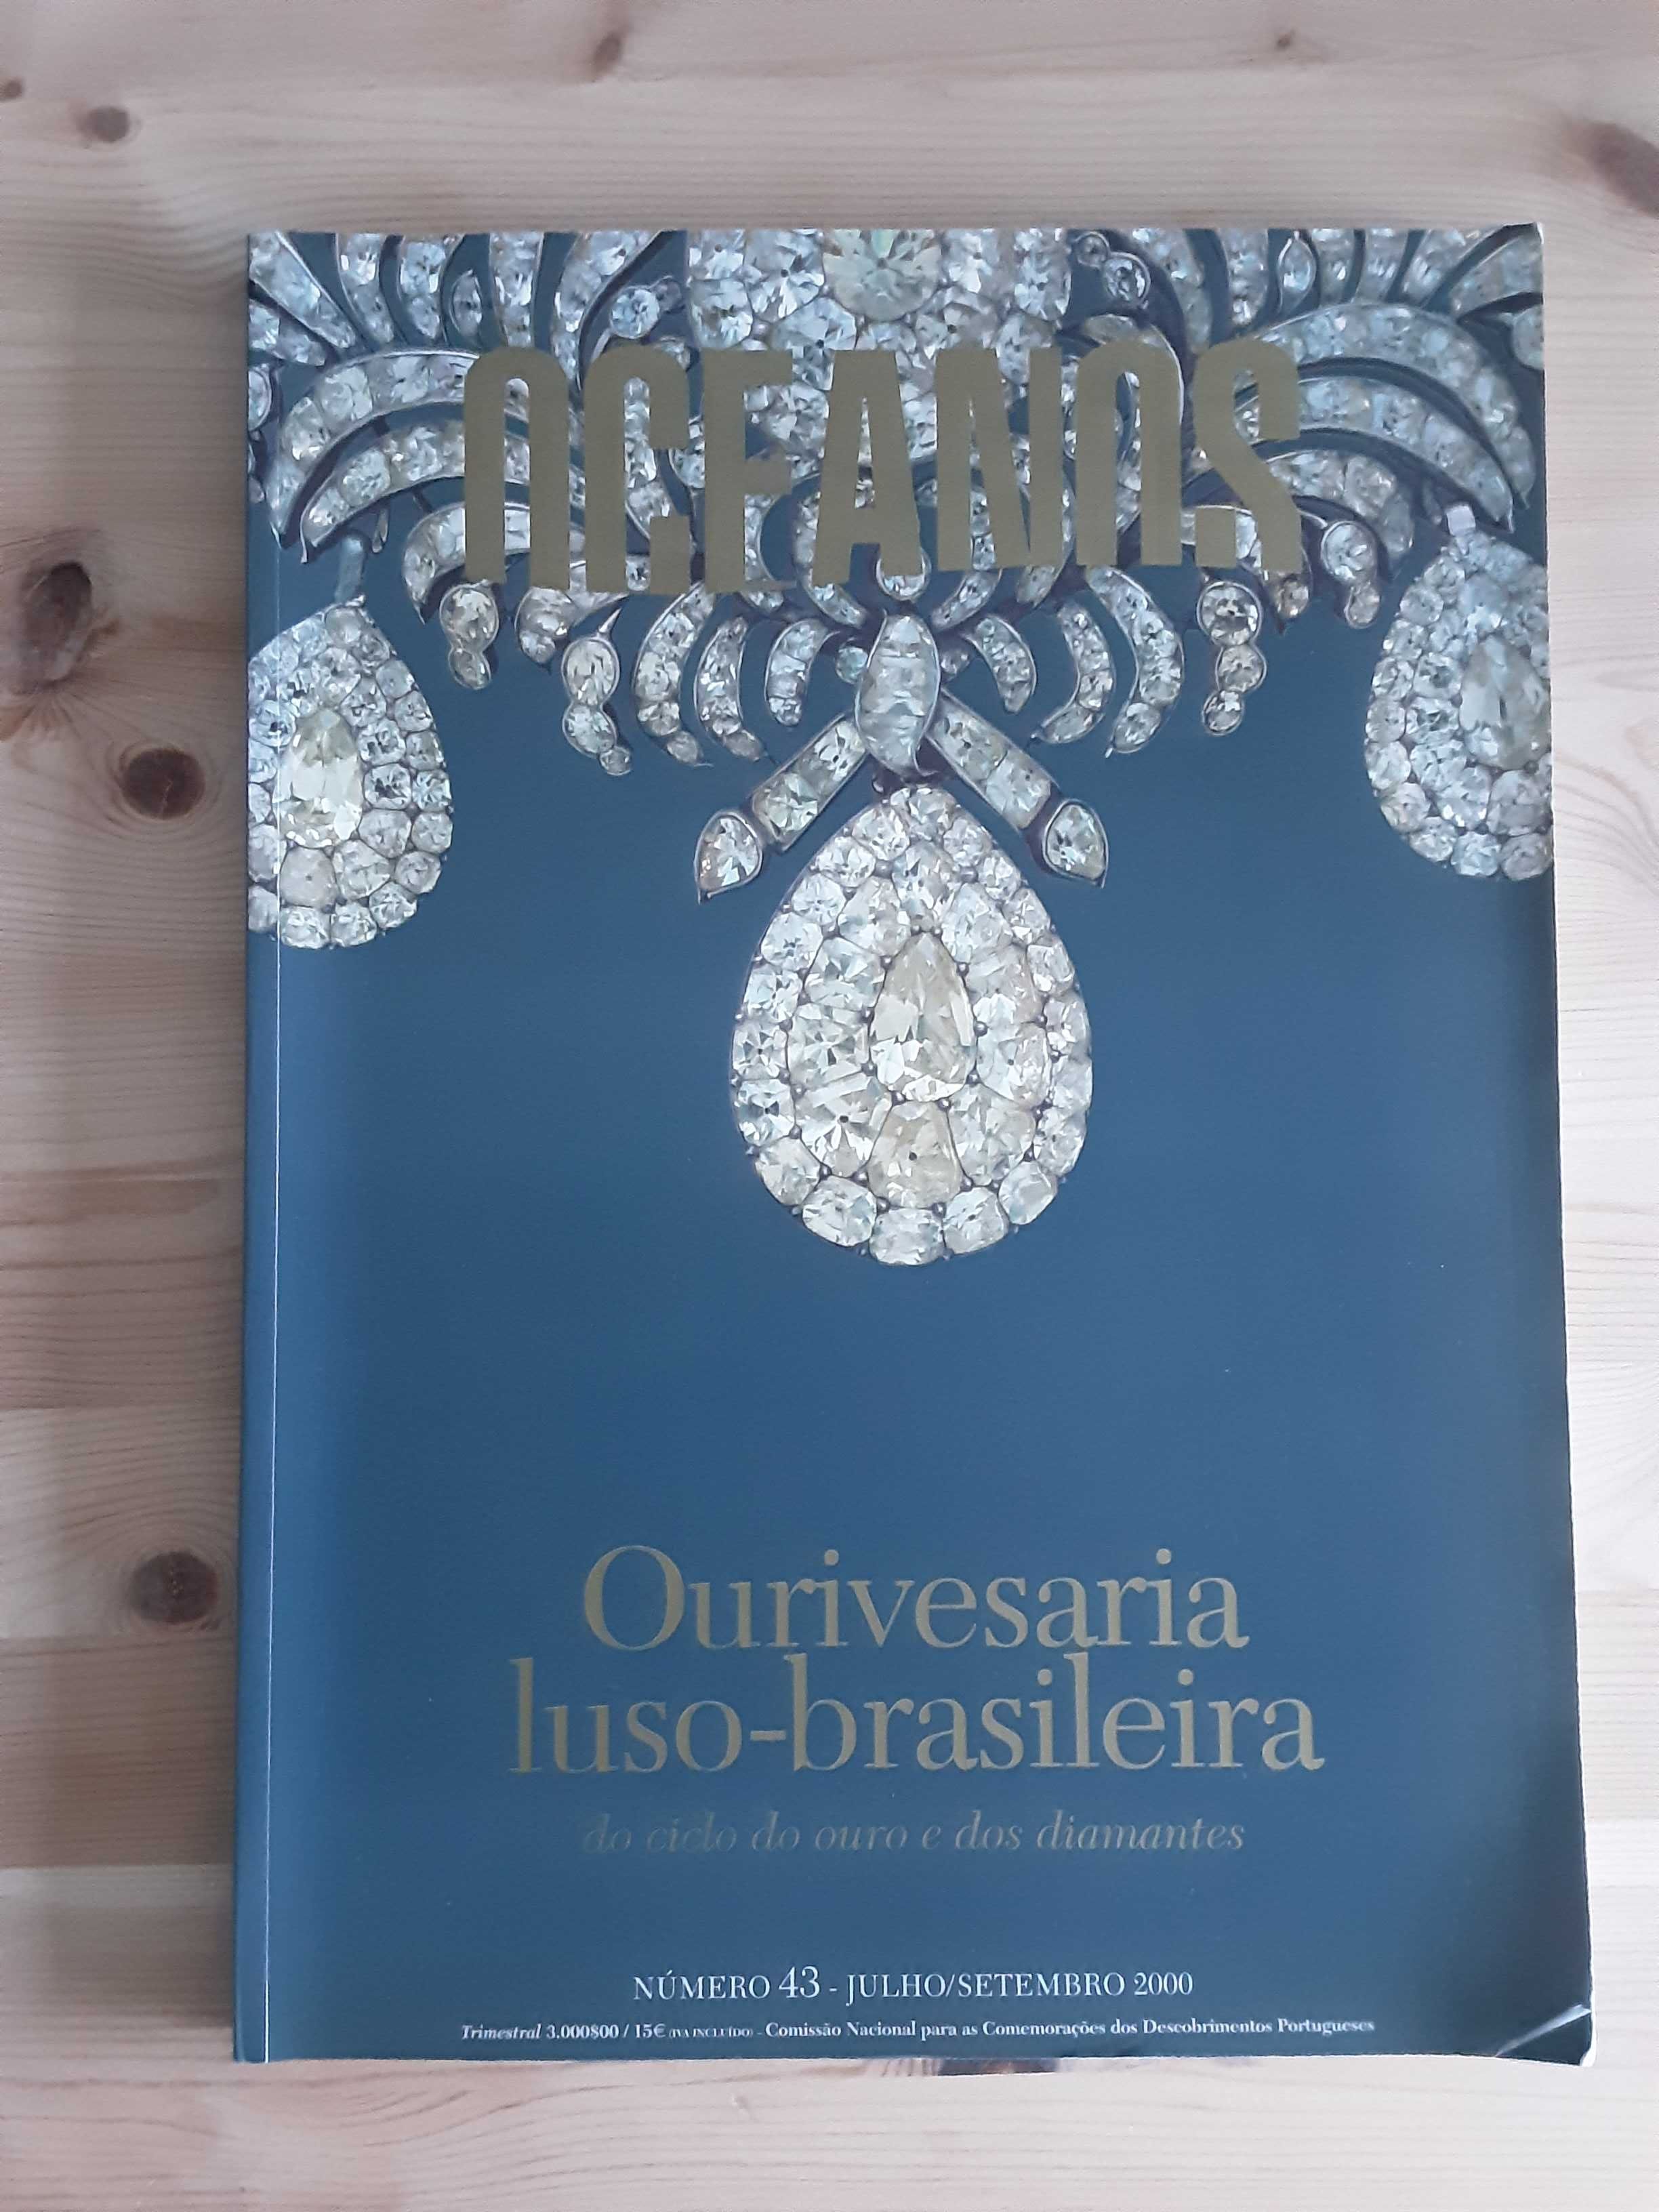 Ourivesaria Luso-Brasileira - Revista Oceanos 43